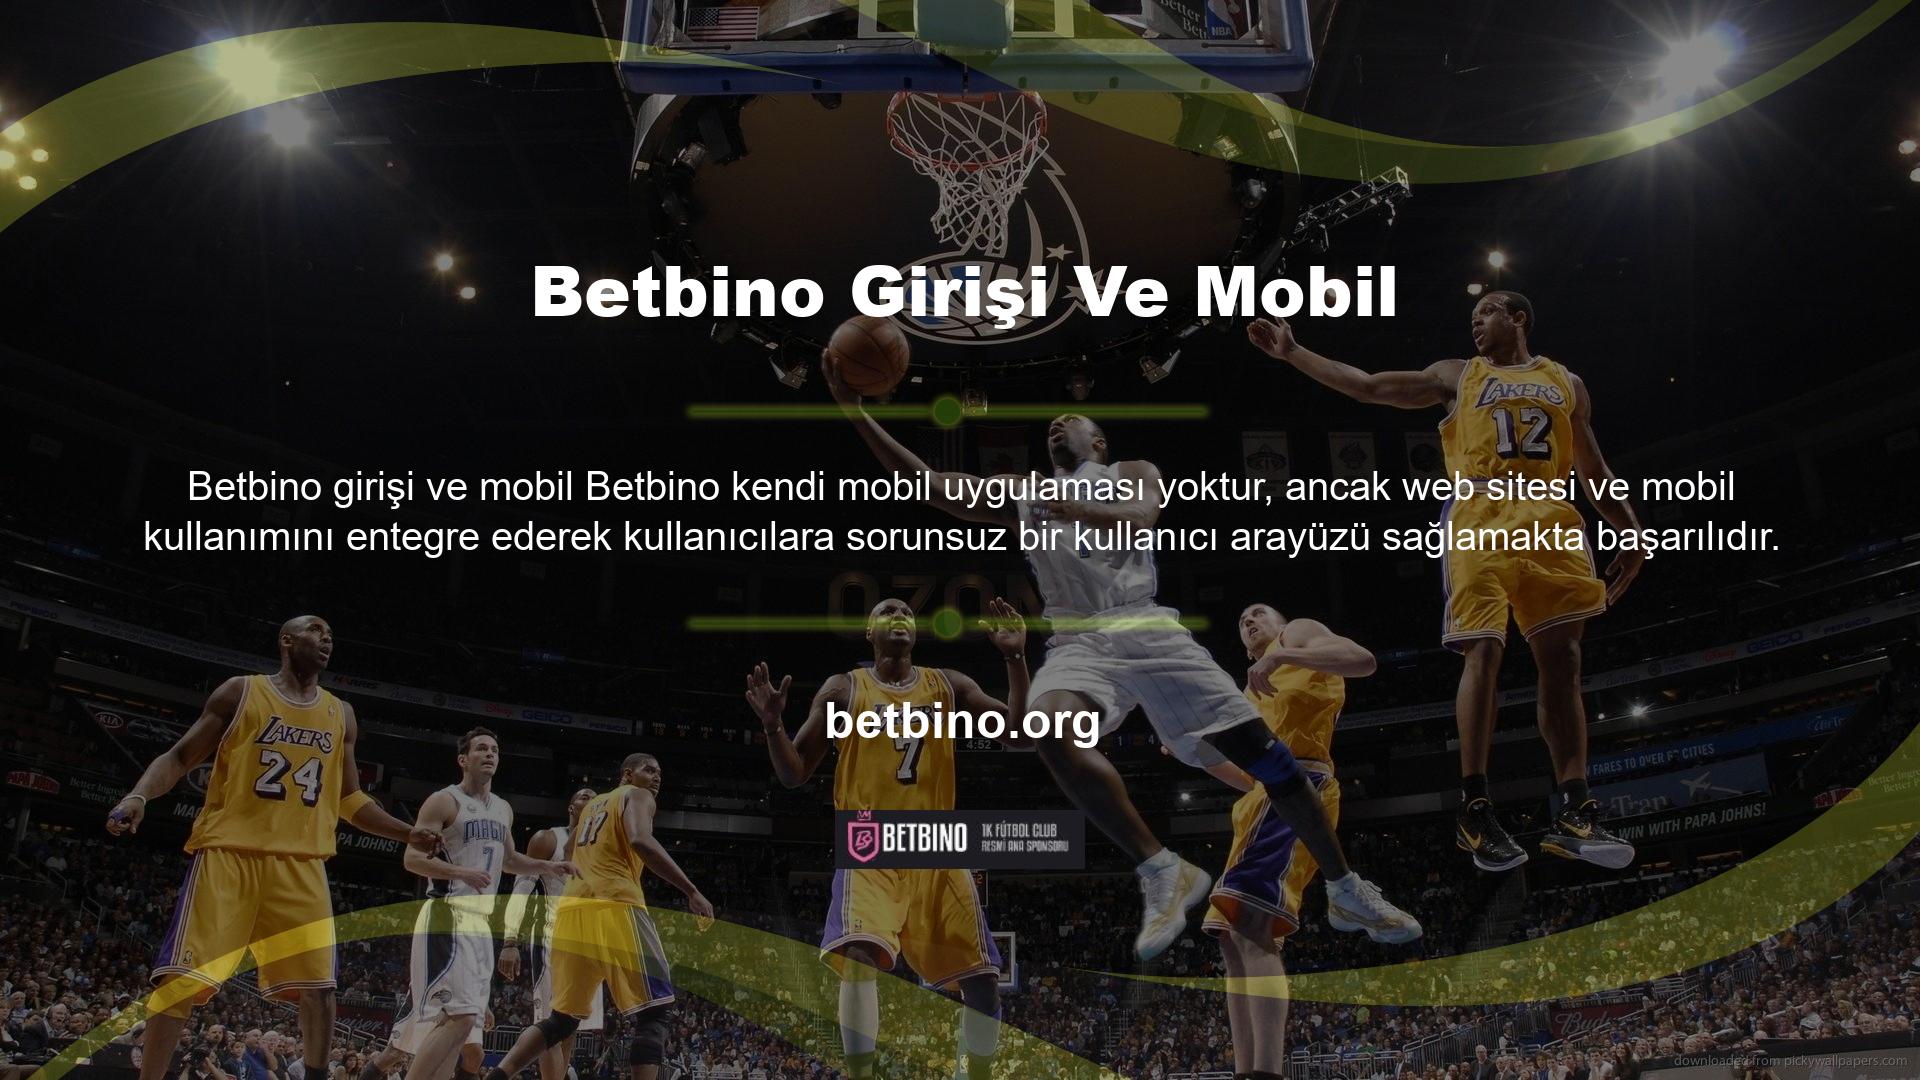 Betbino web sitemizin URL'sini kullanarak her zaman giriş yapabilirsiniz